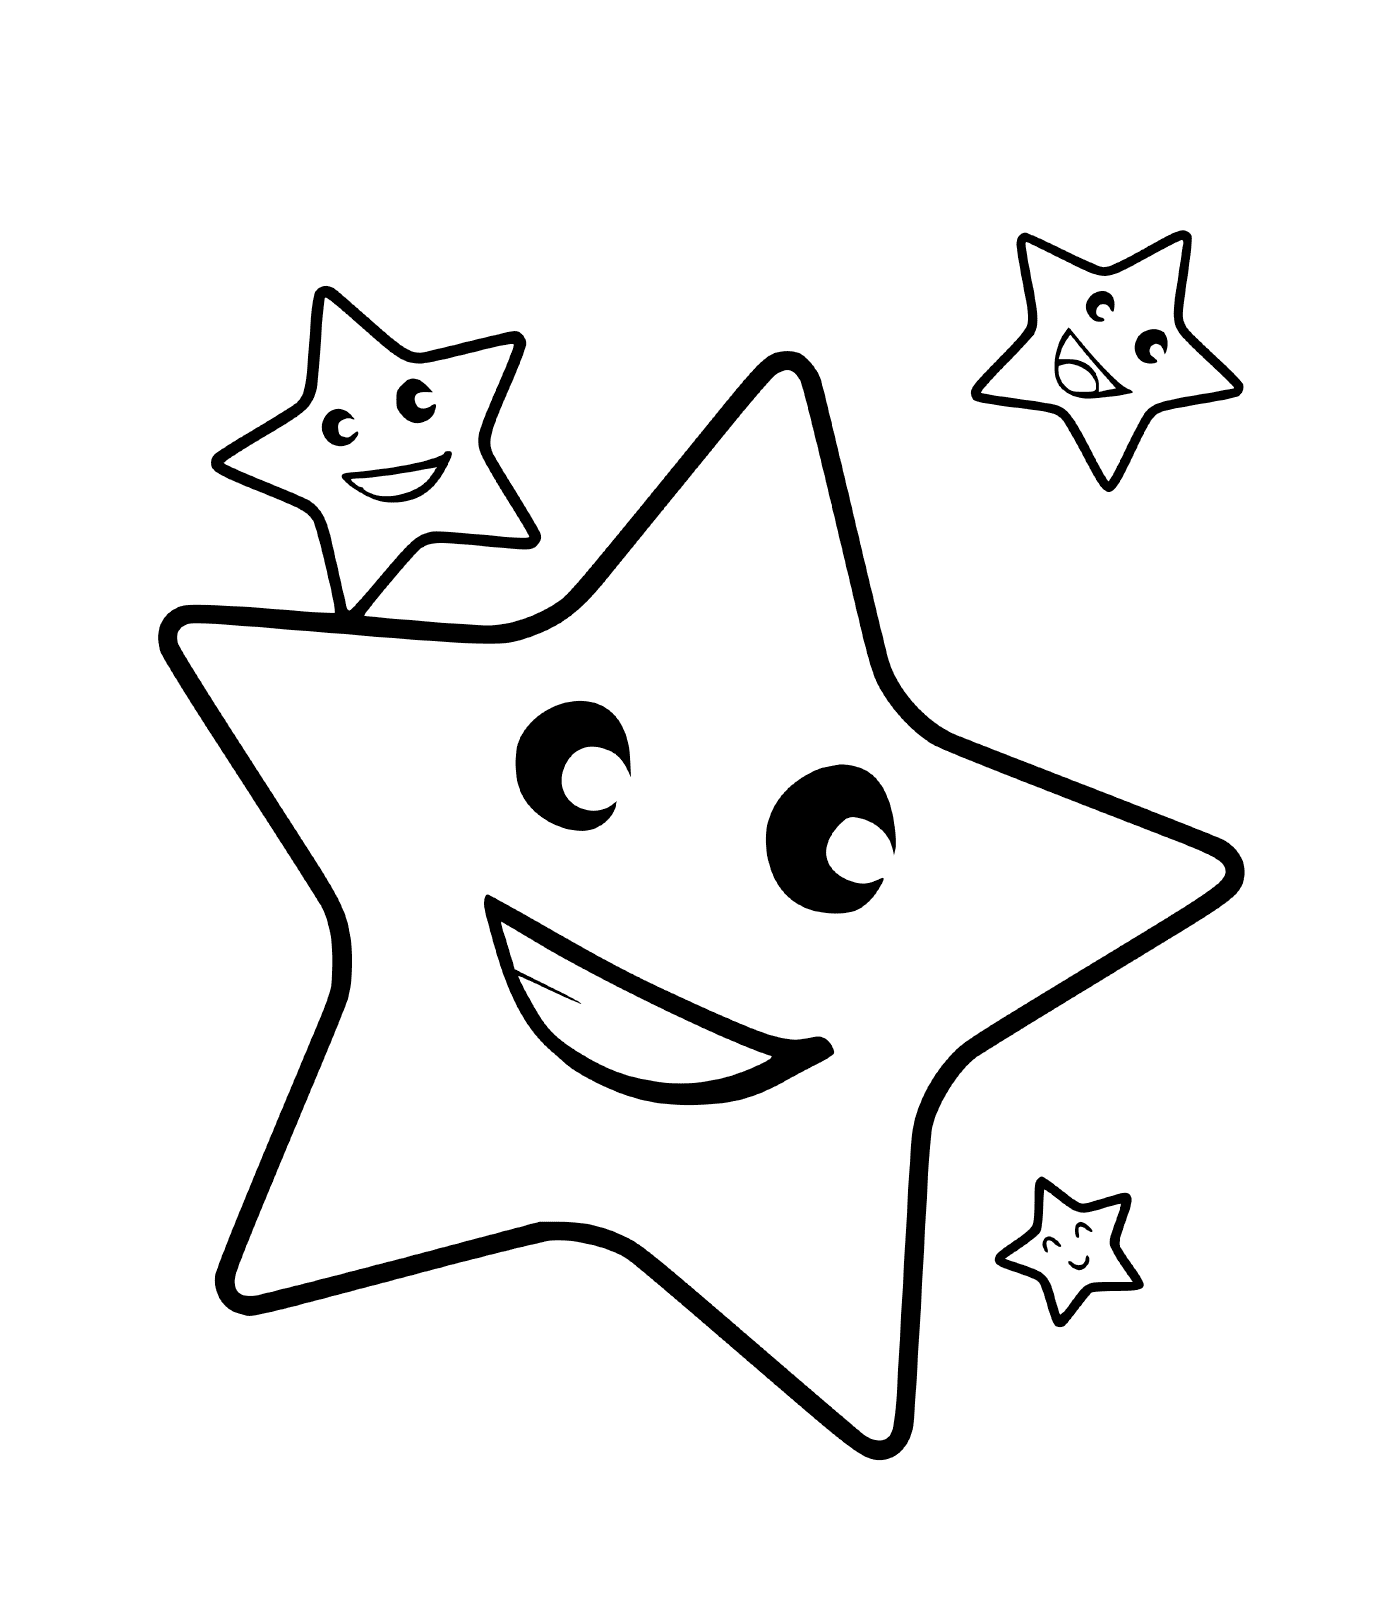  Una stella con tre facce sorridenti 